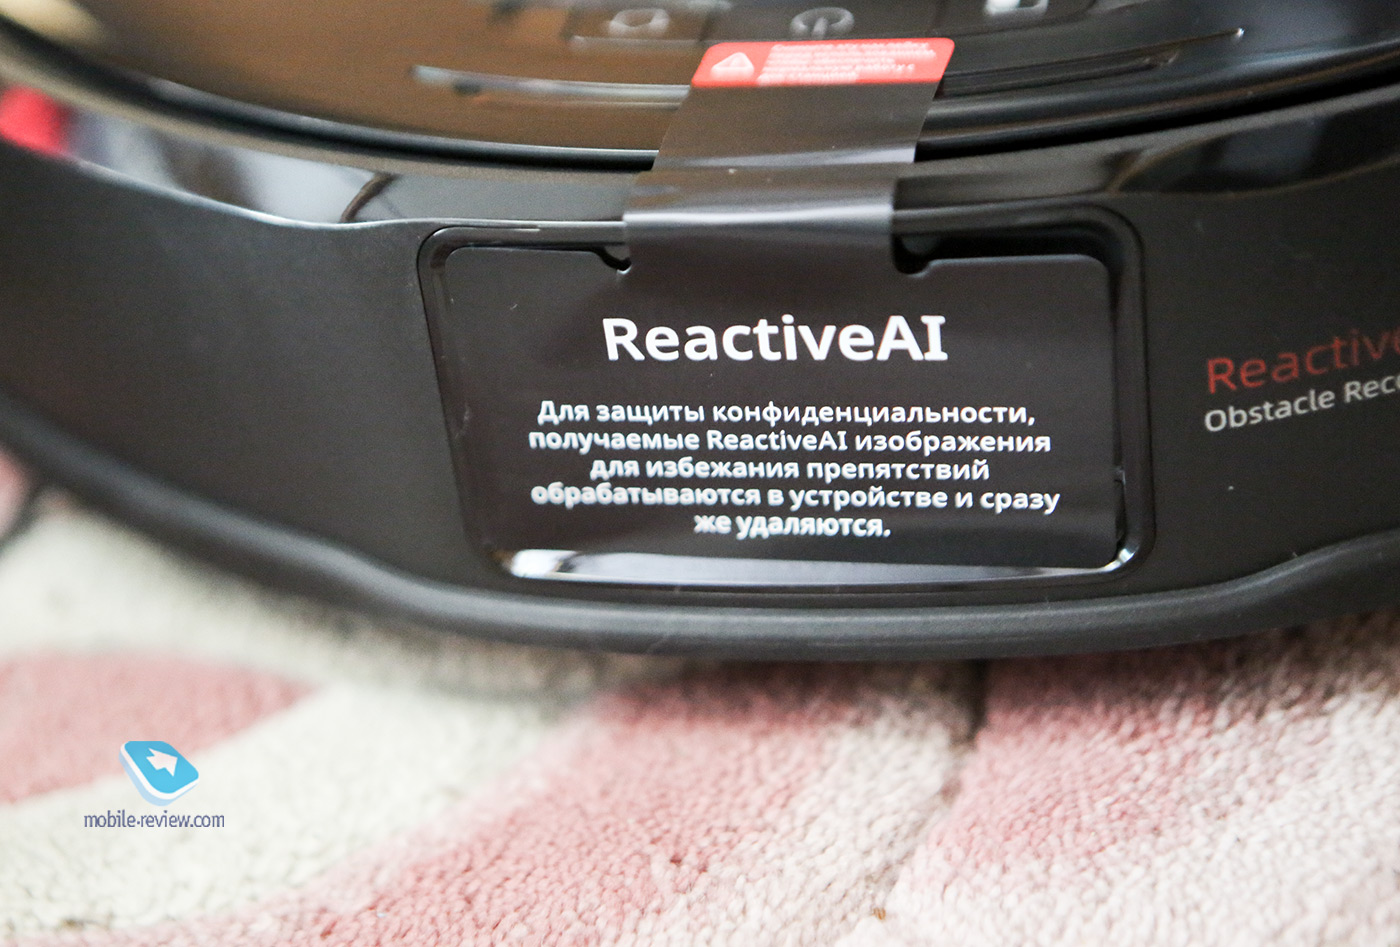 Робот-пылесос с машинным зрением и AI-алгоритмами — Roborock S6 MaxV